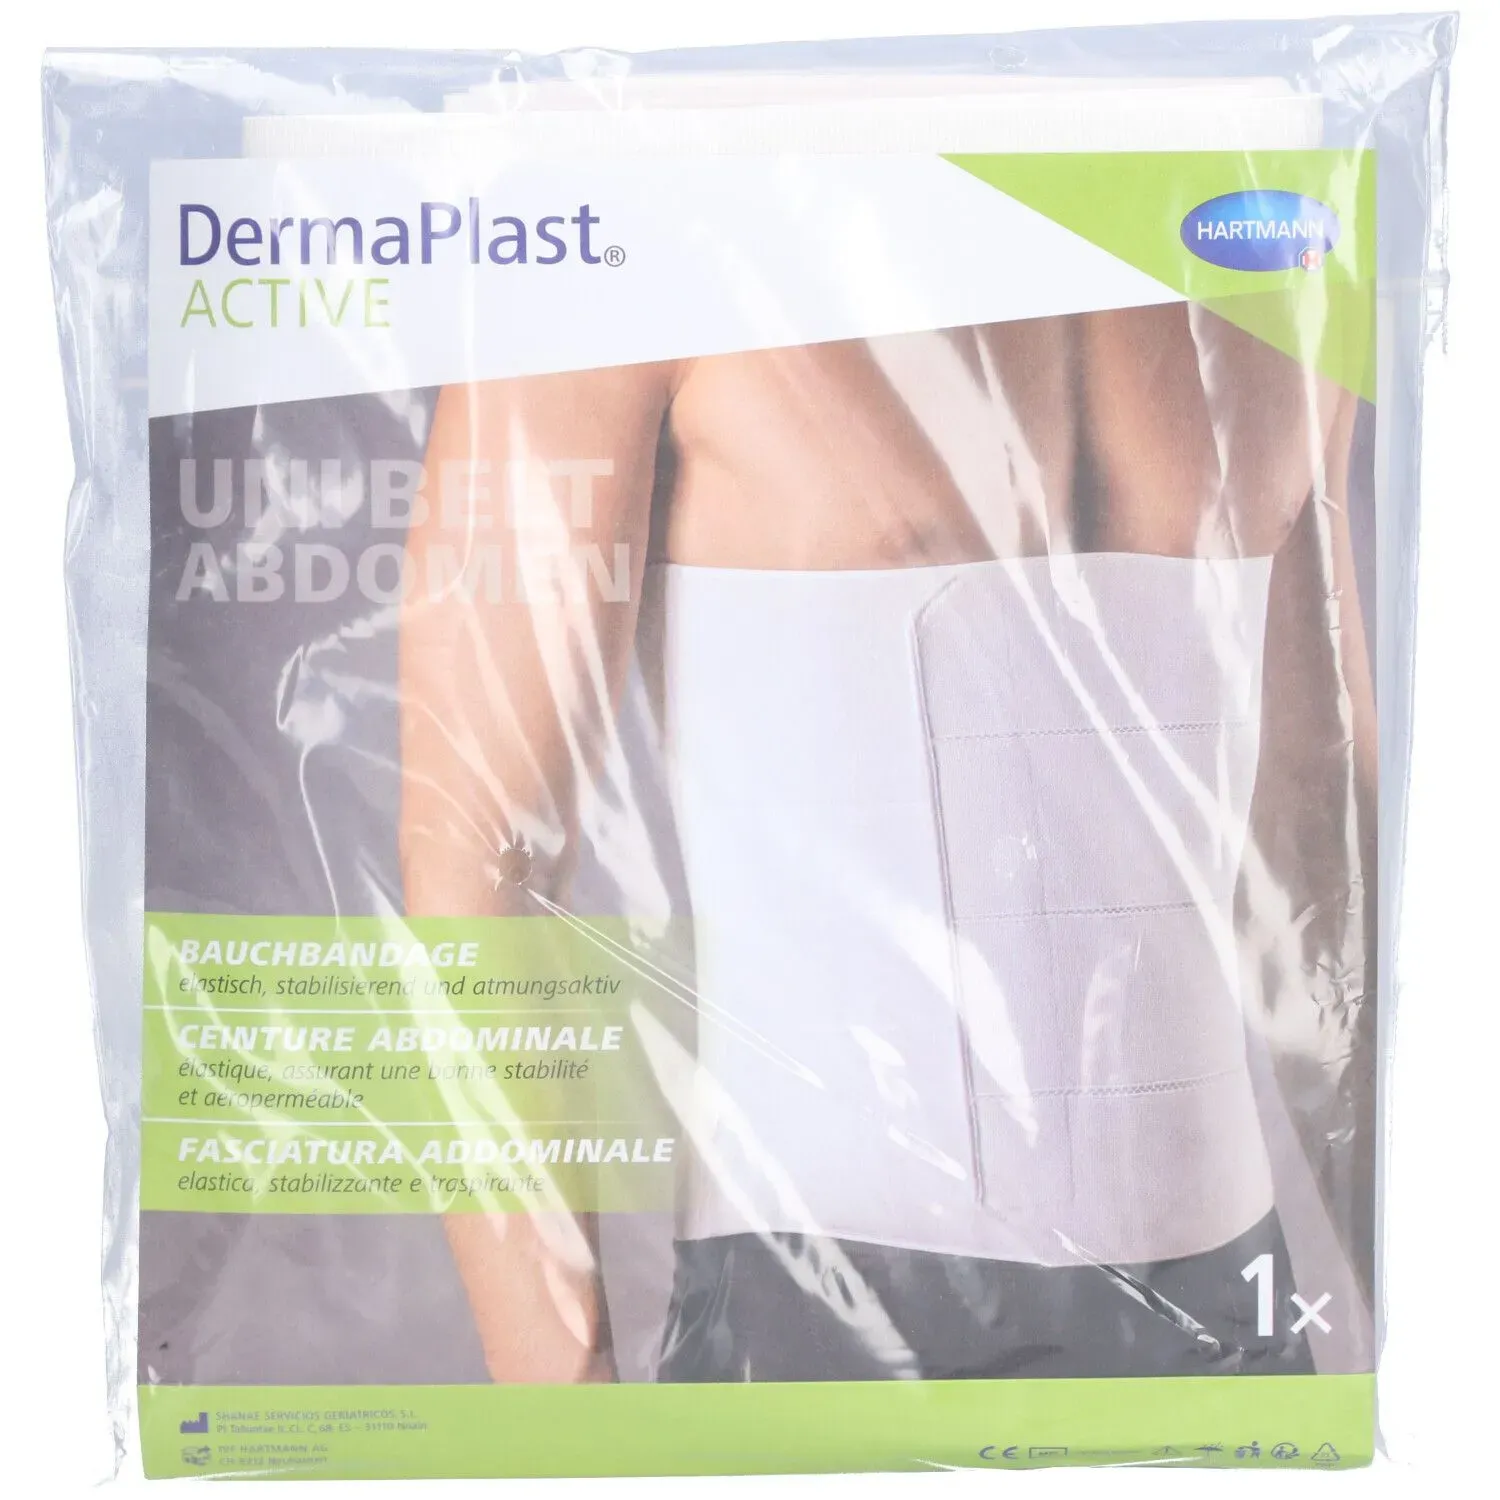 Hartmann Dermaplast® Active Unibelt Abdomen Ceinture abdominale Taille 4 125-150 cm klein